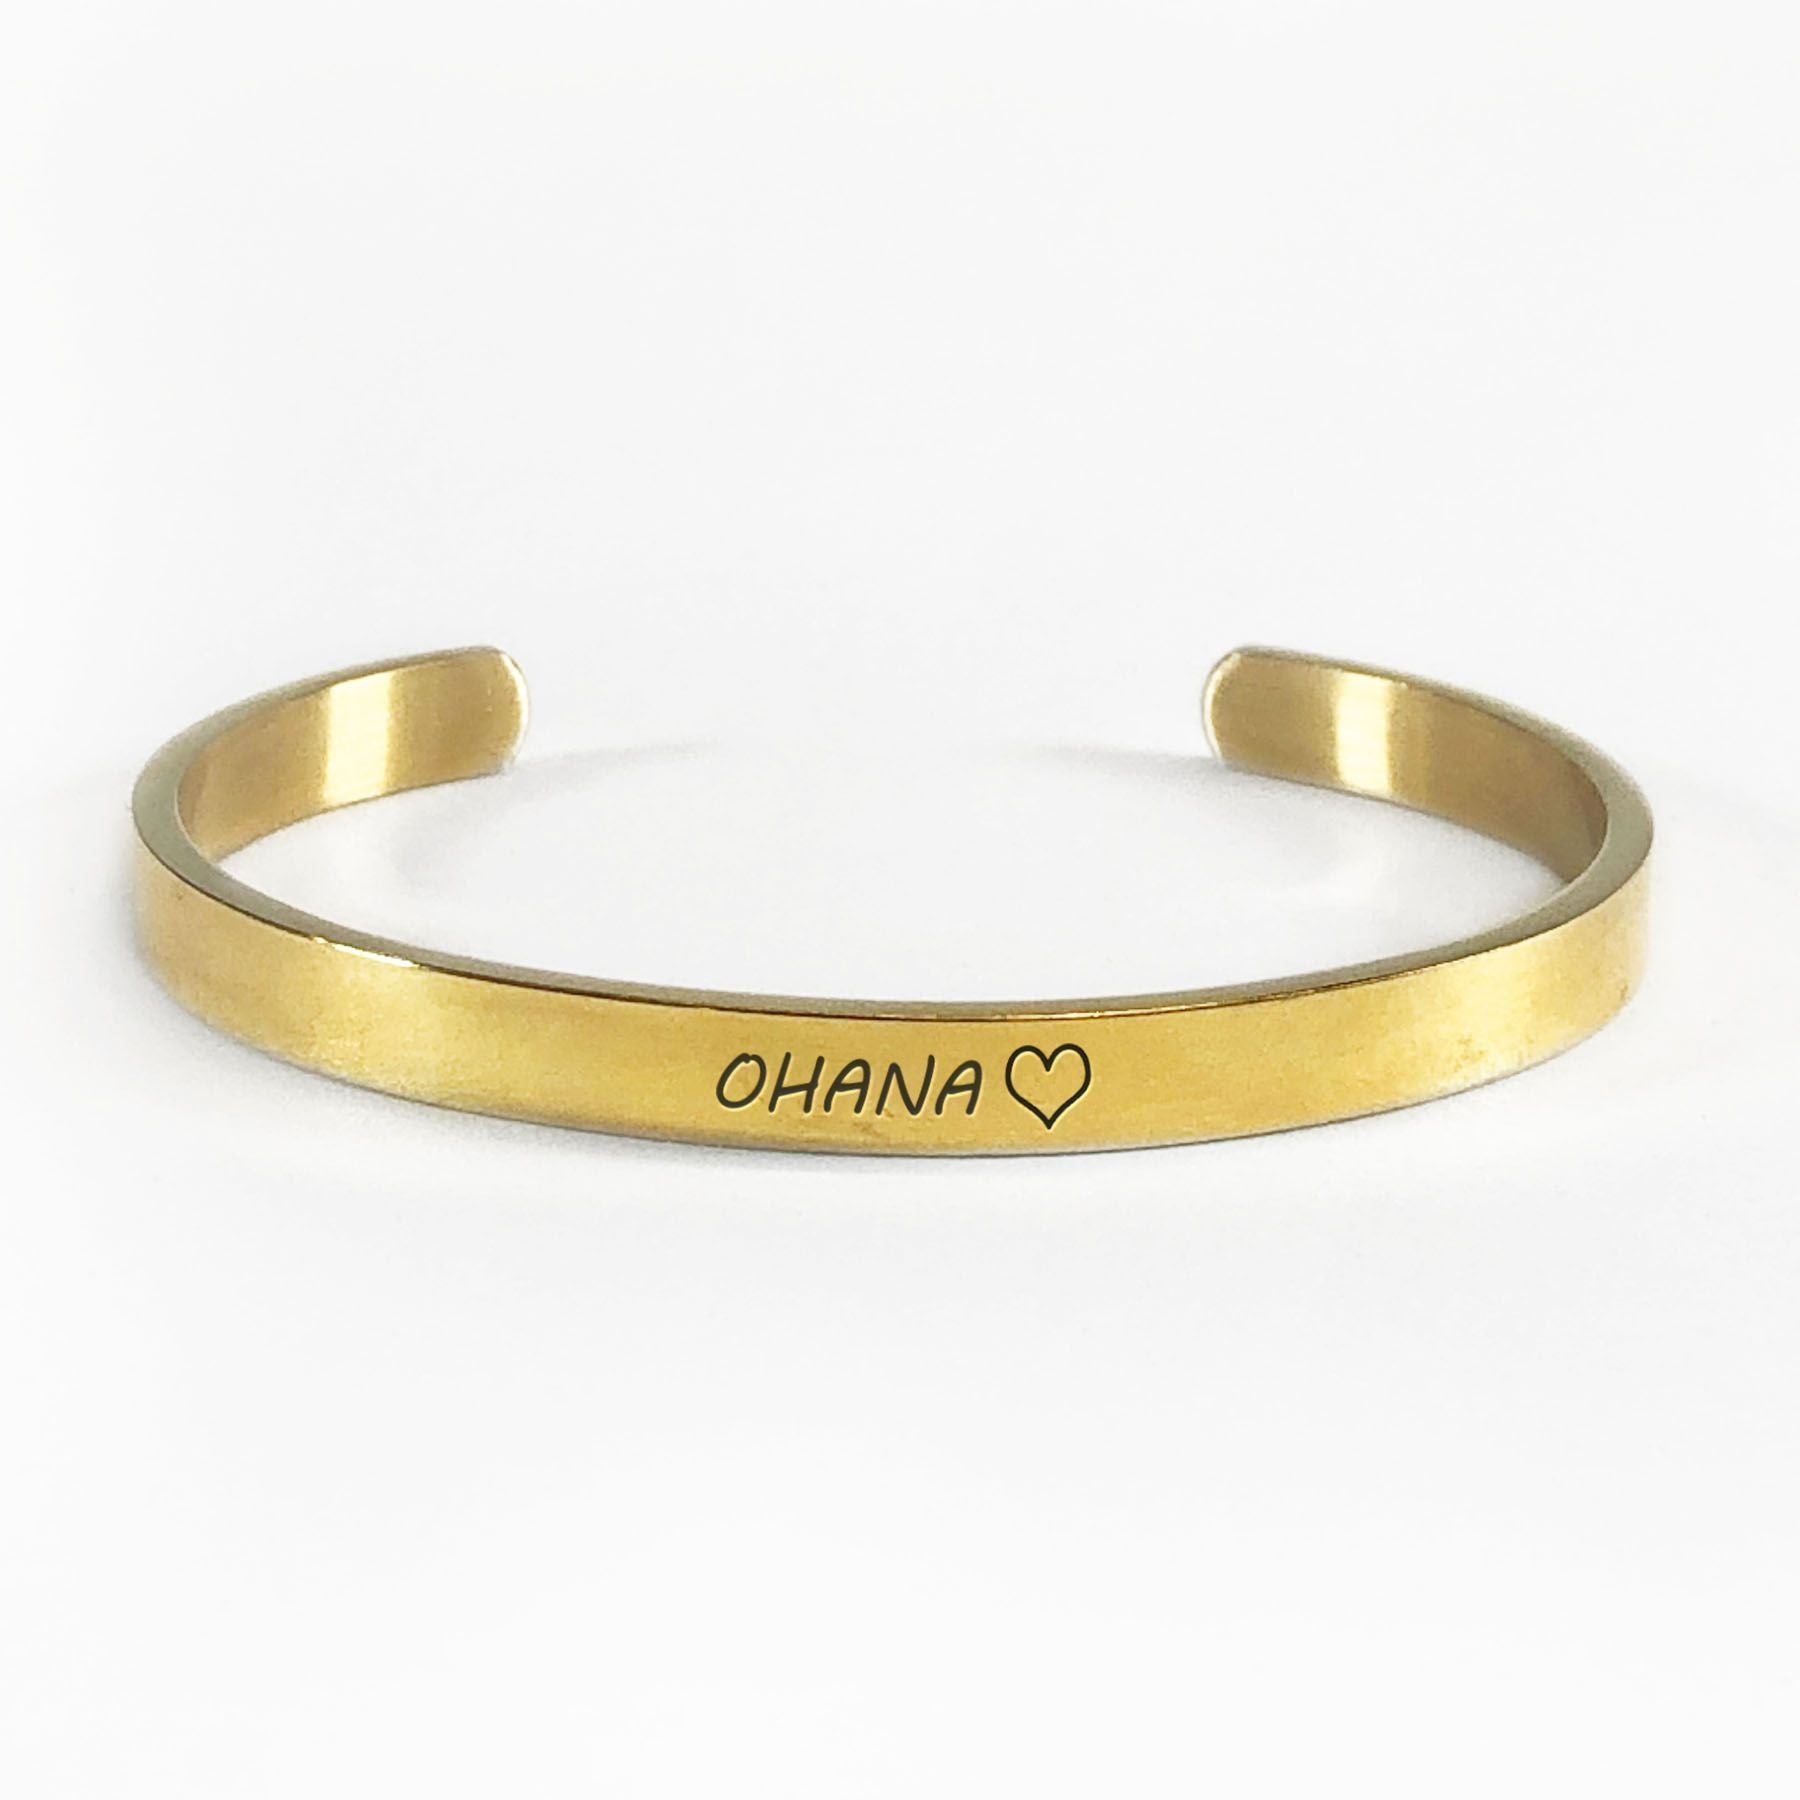 Ohana bracelet with gold plating